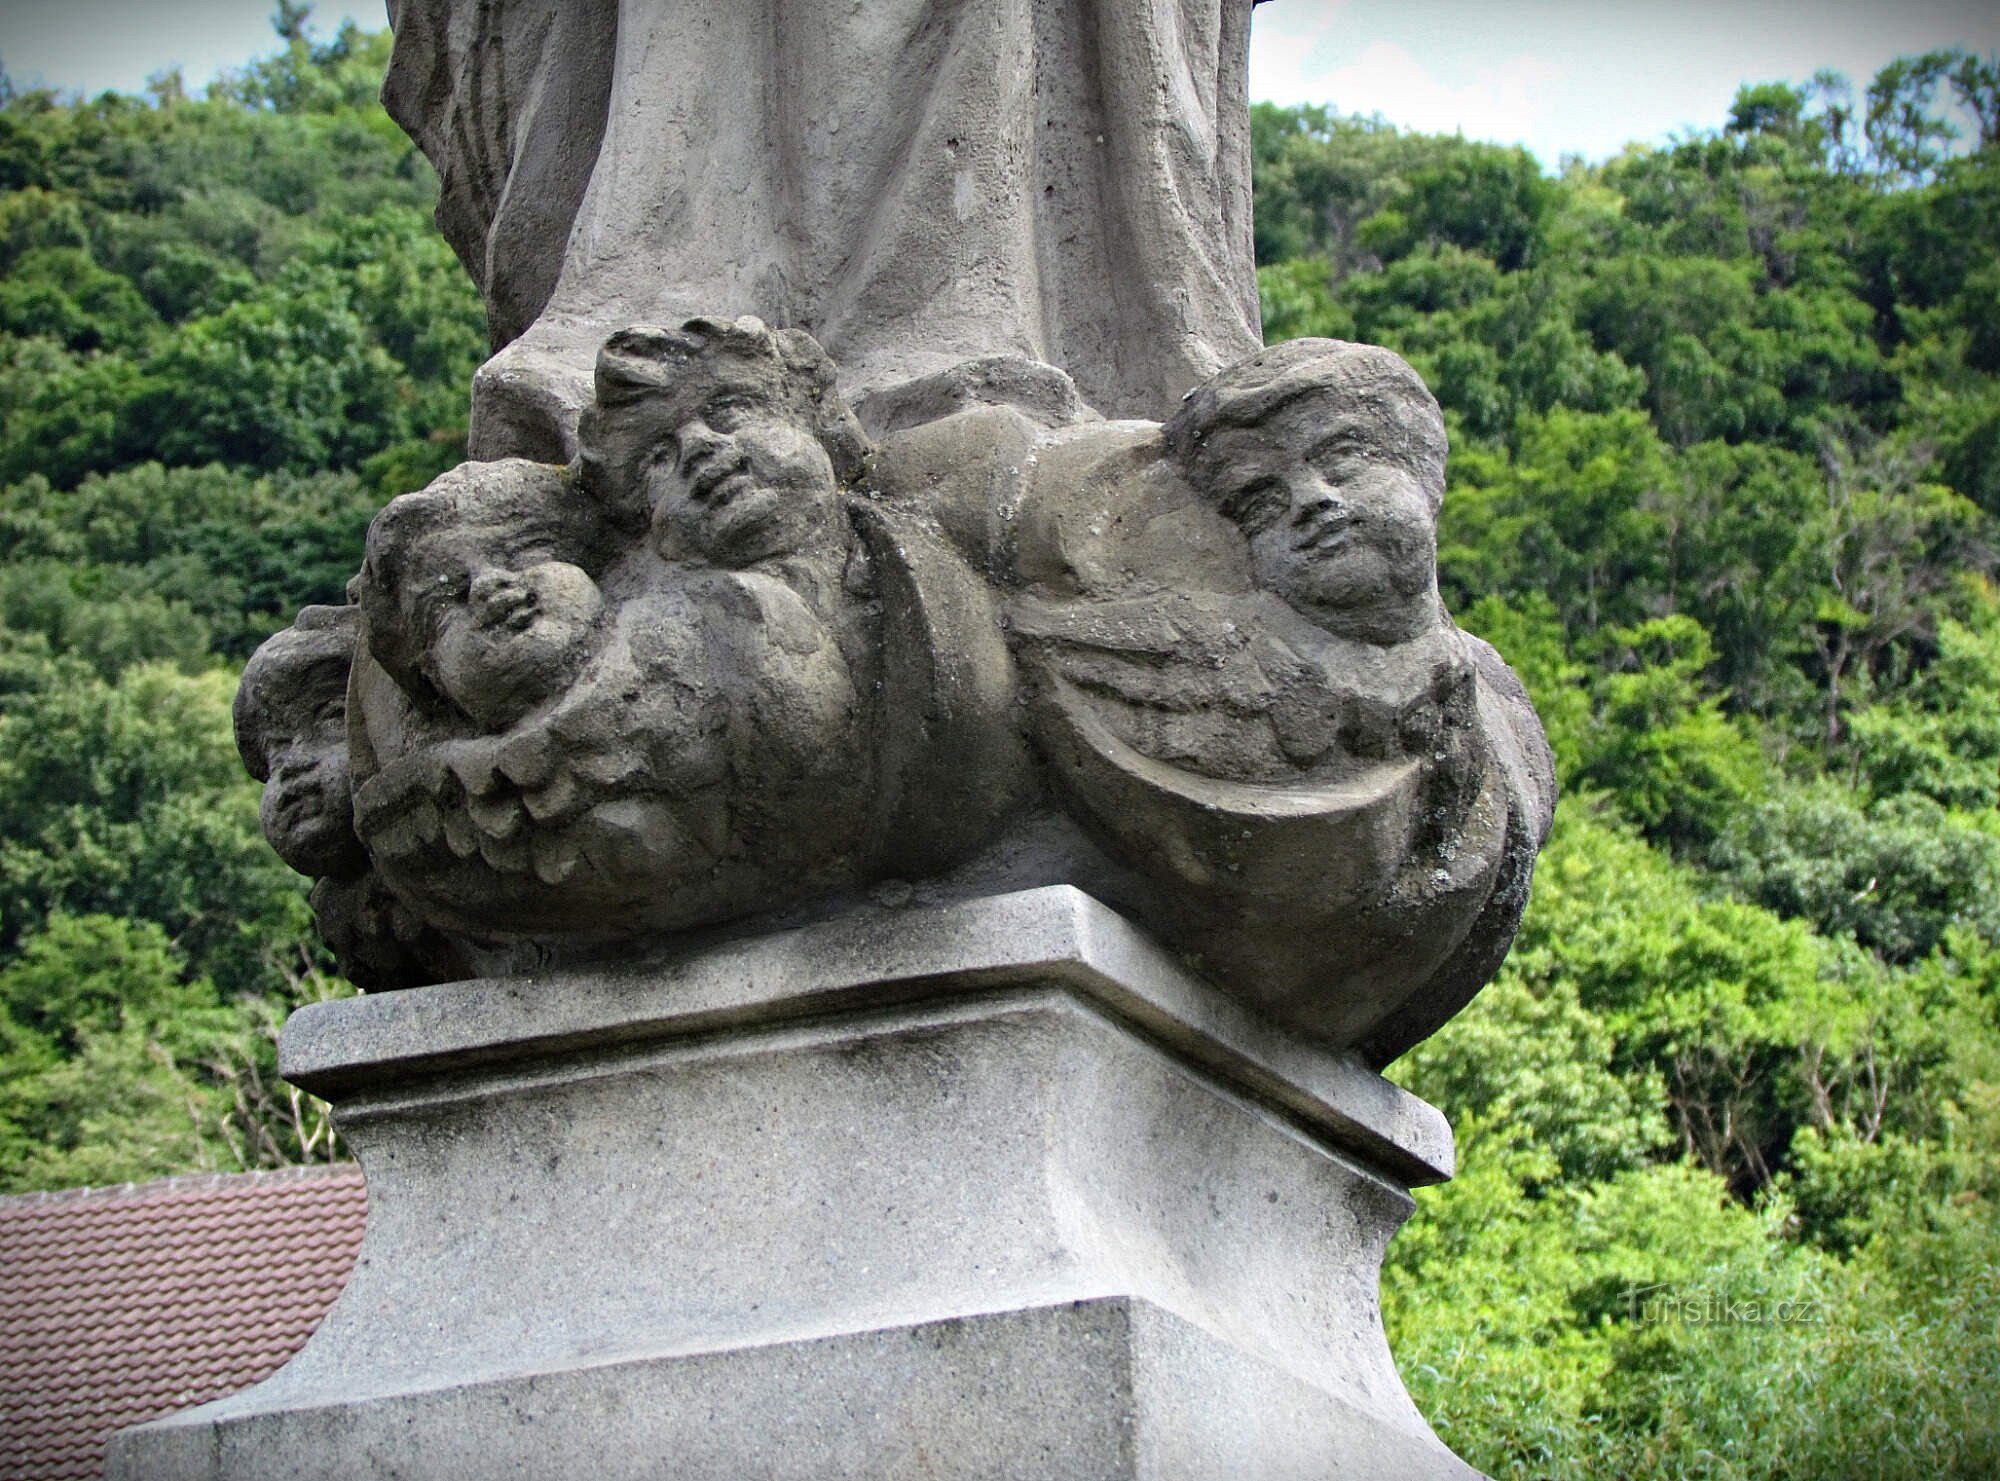 Týn nad Bečvou - Pyhän Johannes Nepomukin patsas